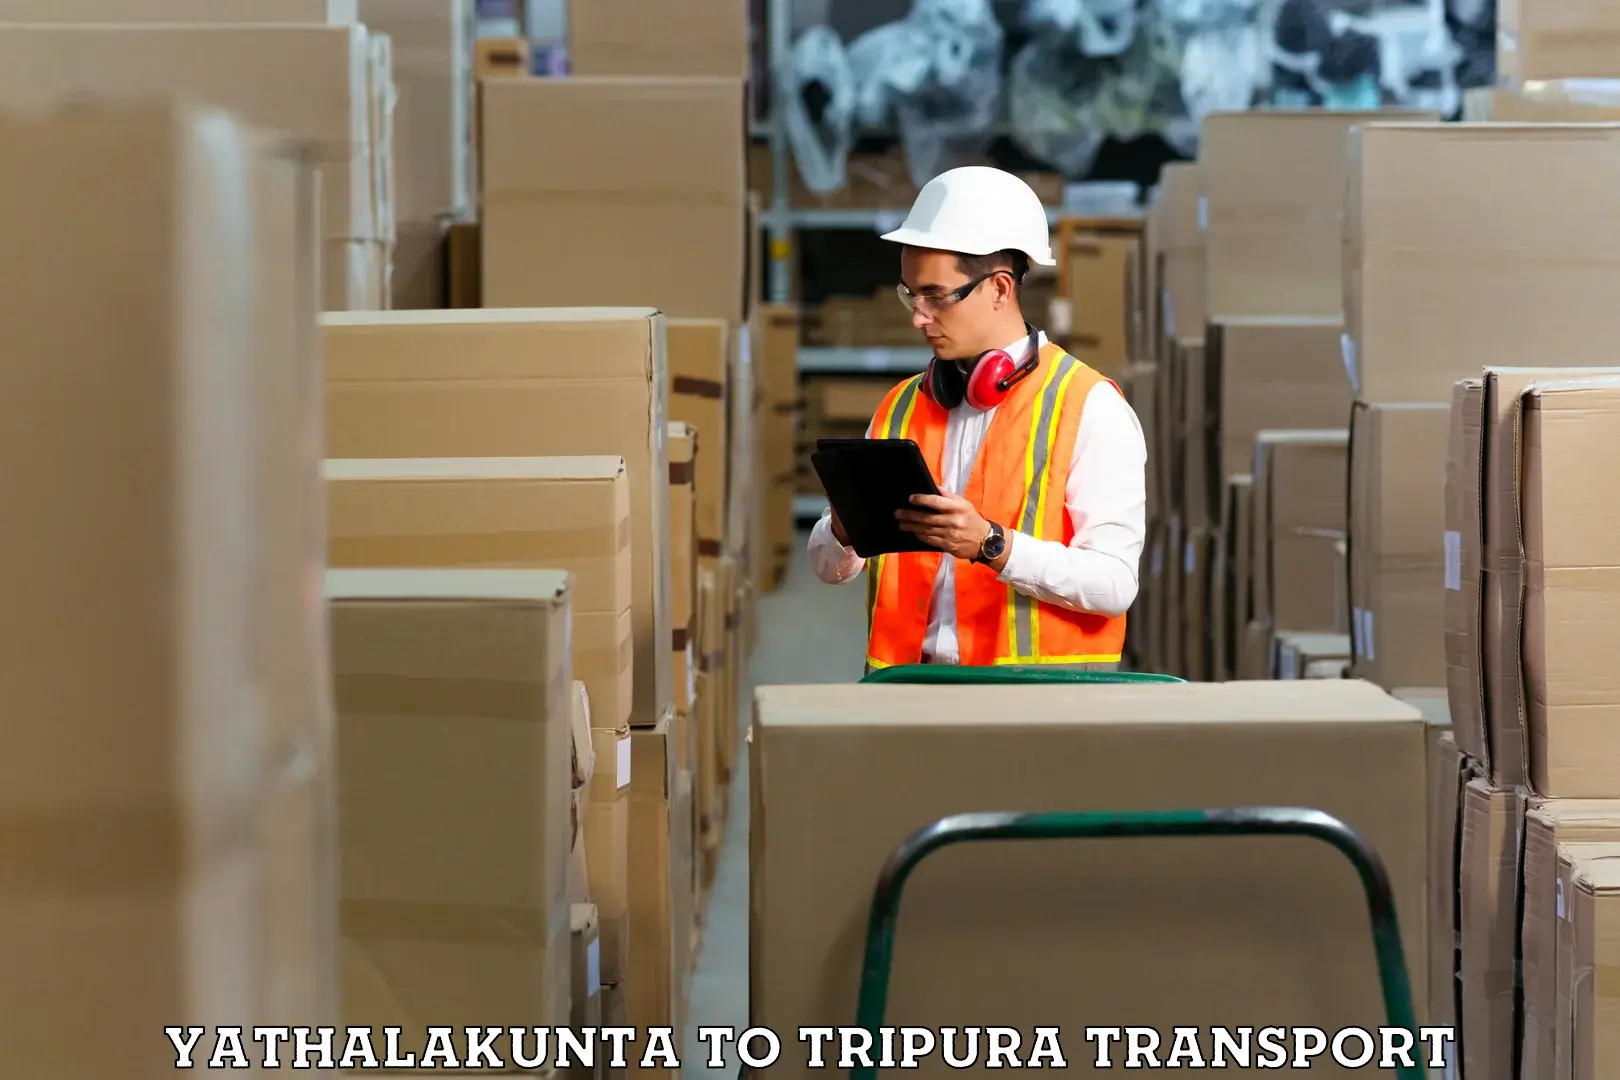 Furniture transport service in Yathalakunta to West Tripura